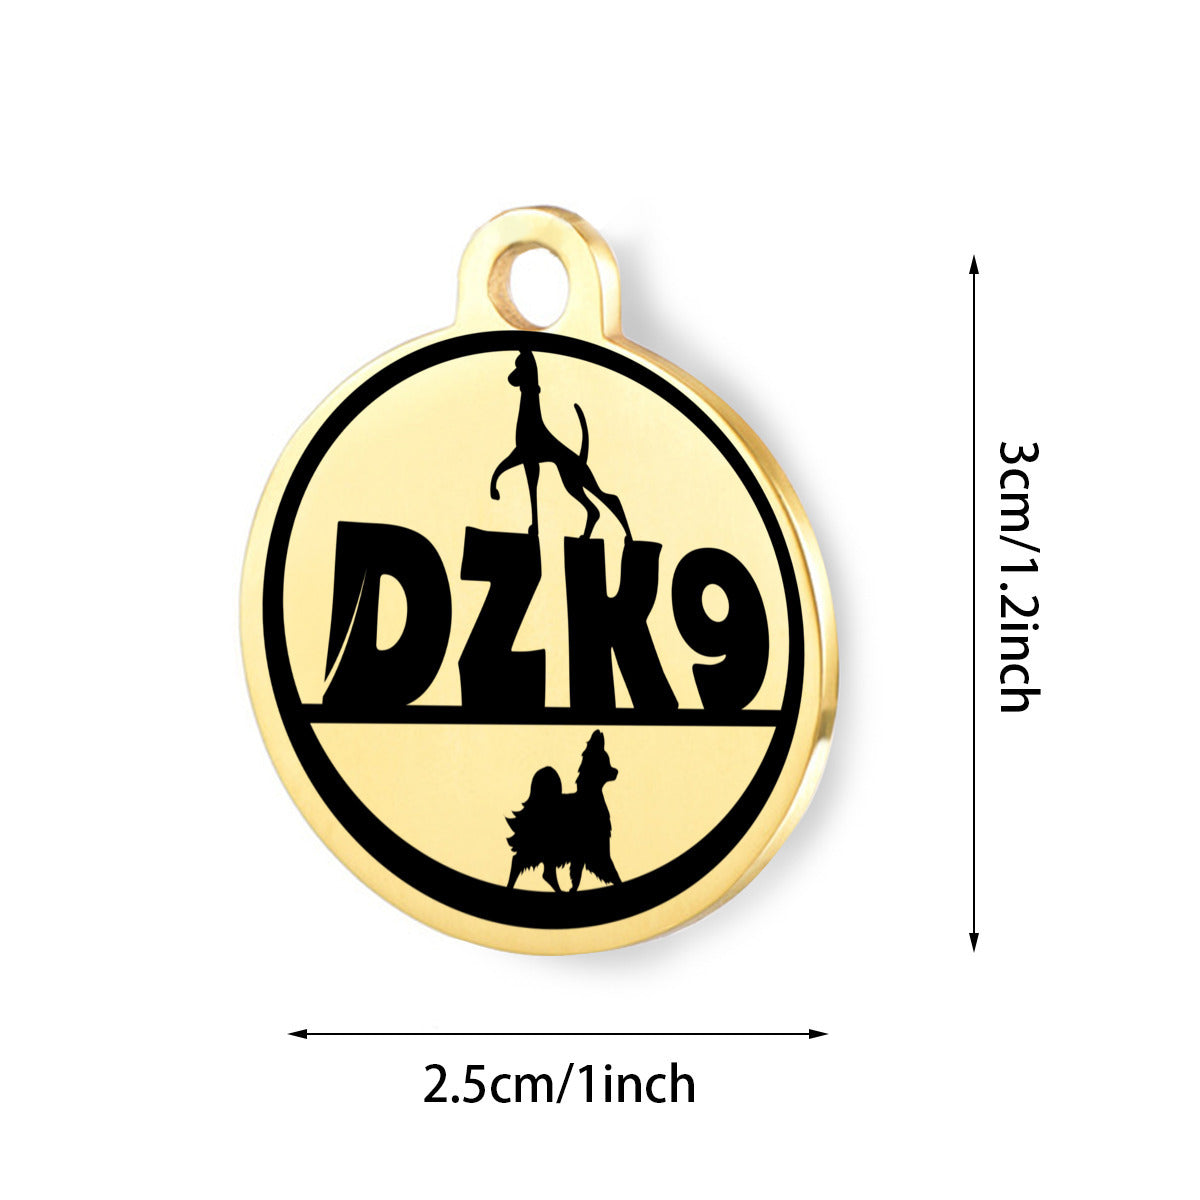 DZK9-Logo-sIGN